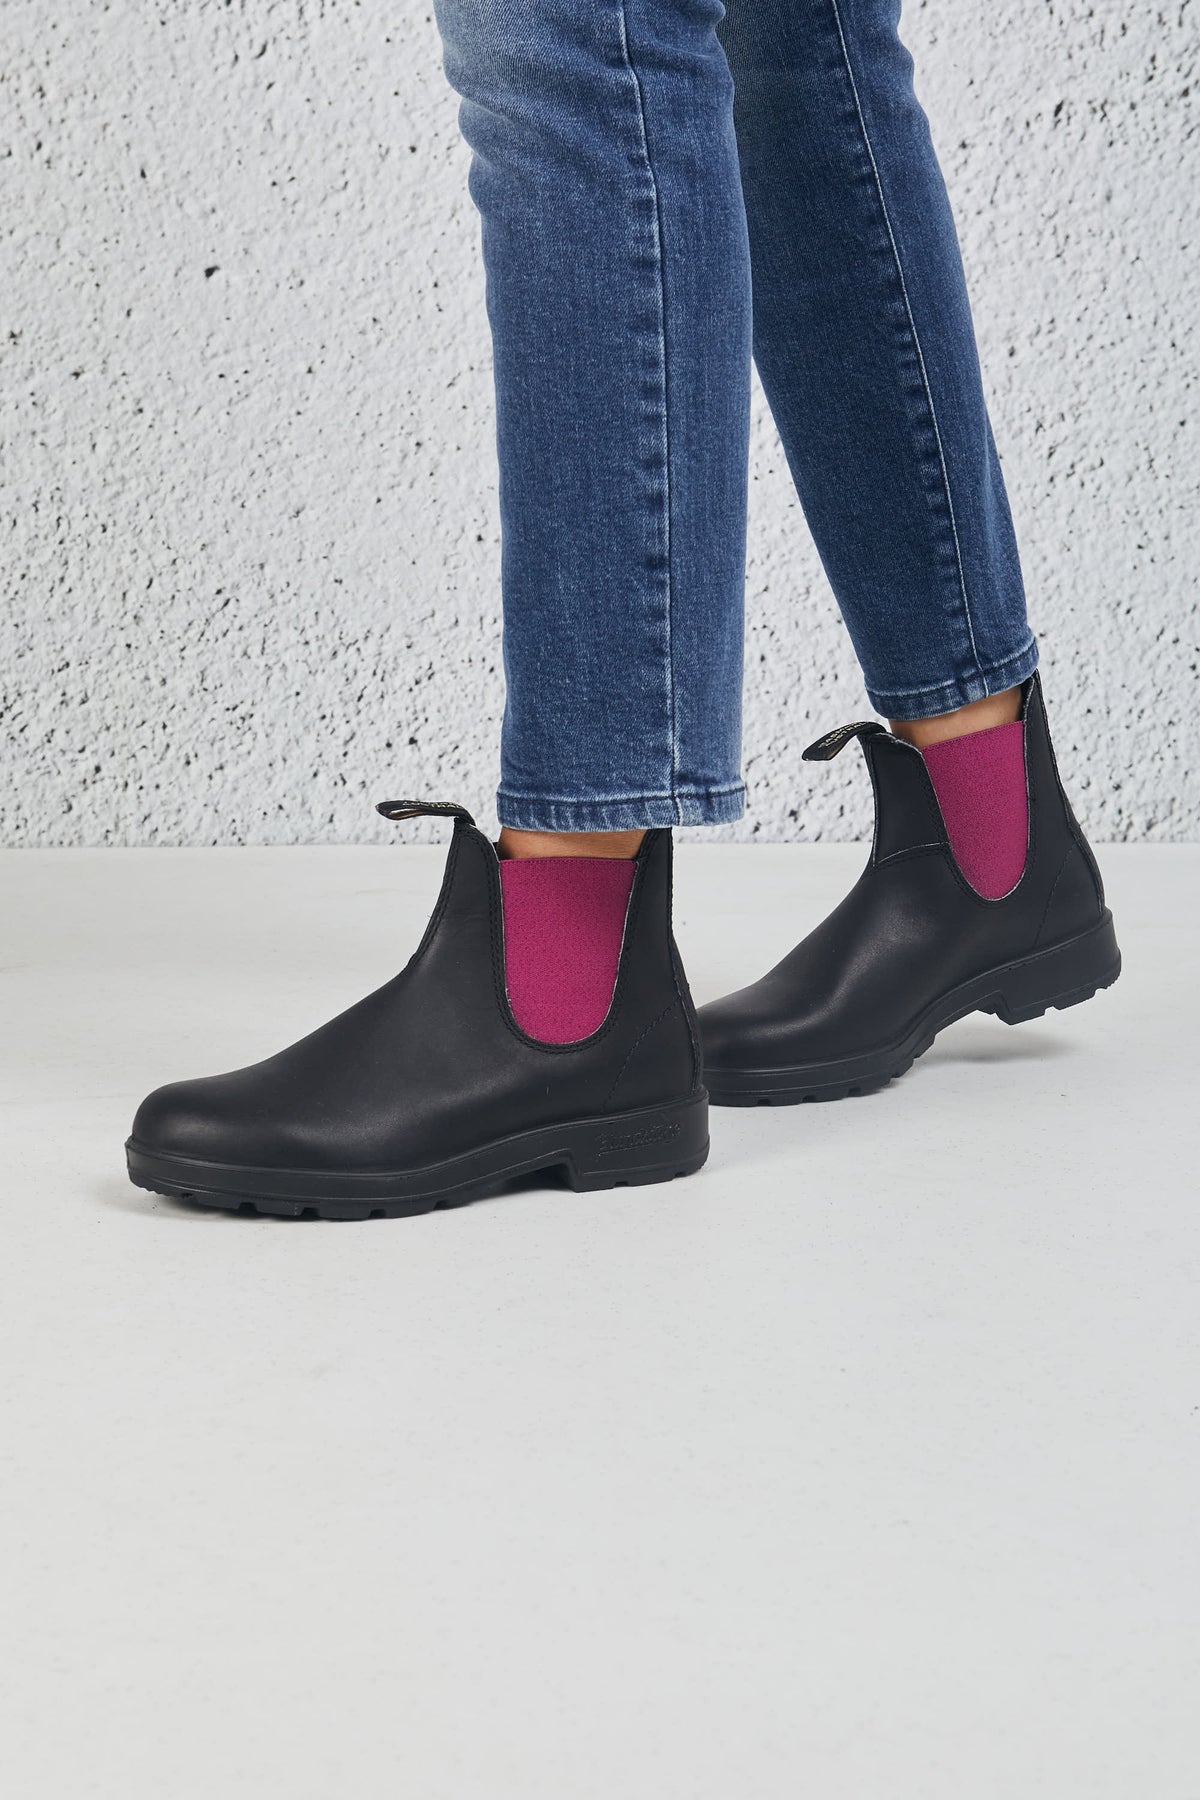 Blundstone Boot Black Leather Nero Donna - 3